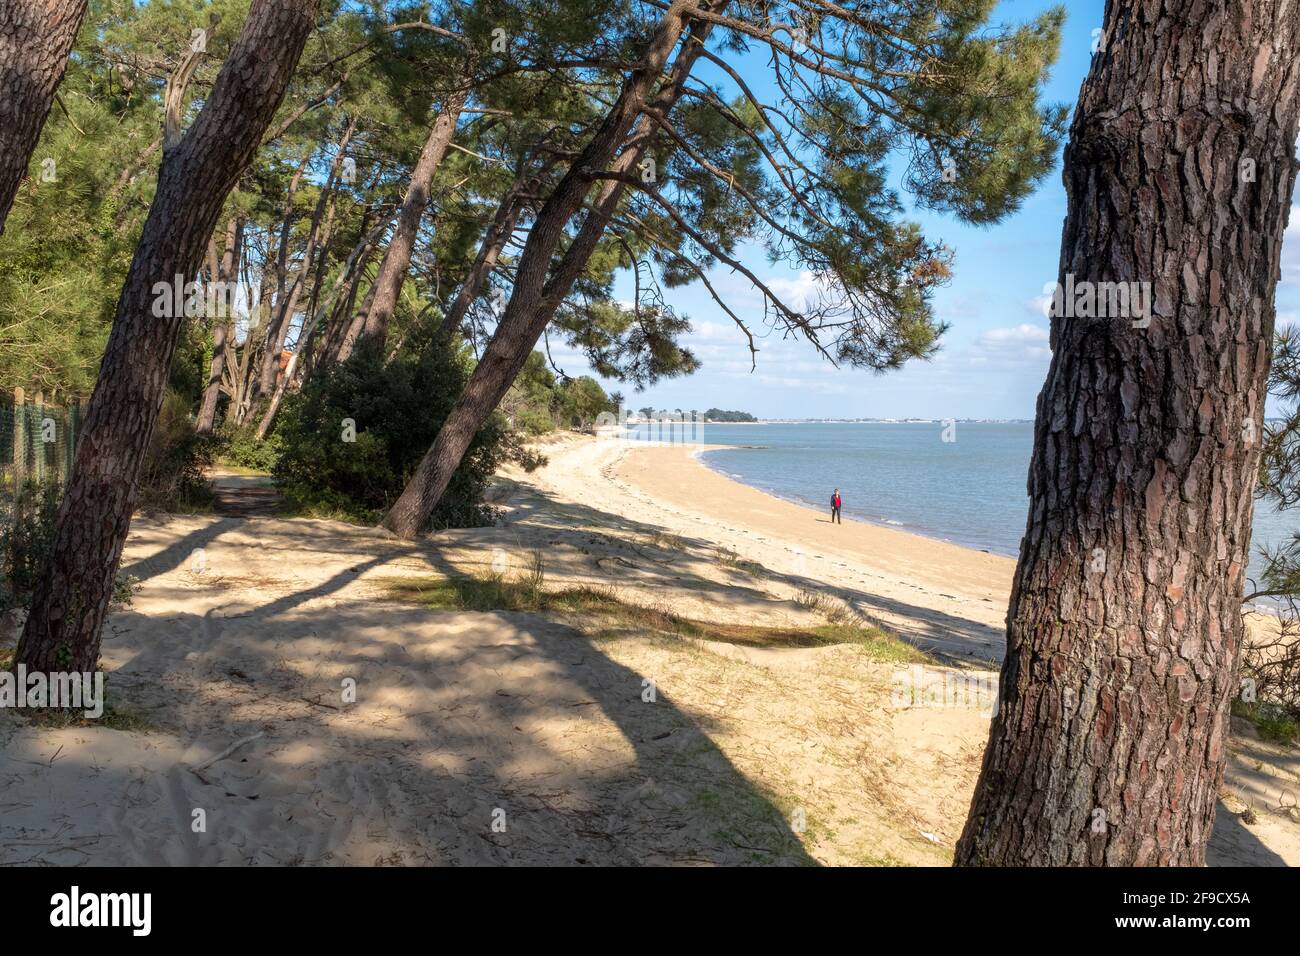 Saint-Trojan-les-Bains, Francia - 26 de febrero de 2020: Una persona que lleva ropa roja camina en una playa con aguas tranquilas frente al continente un soleado Foto de stock